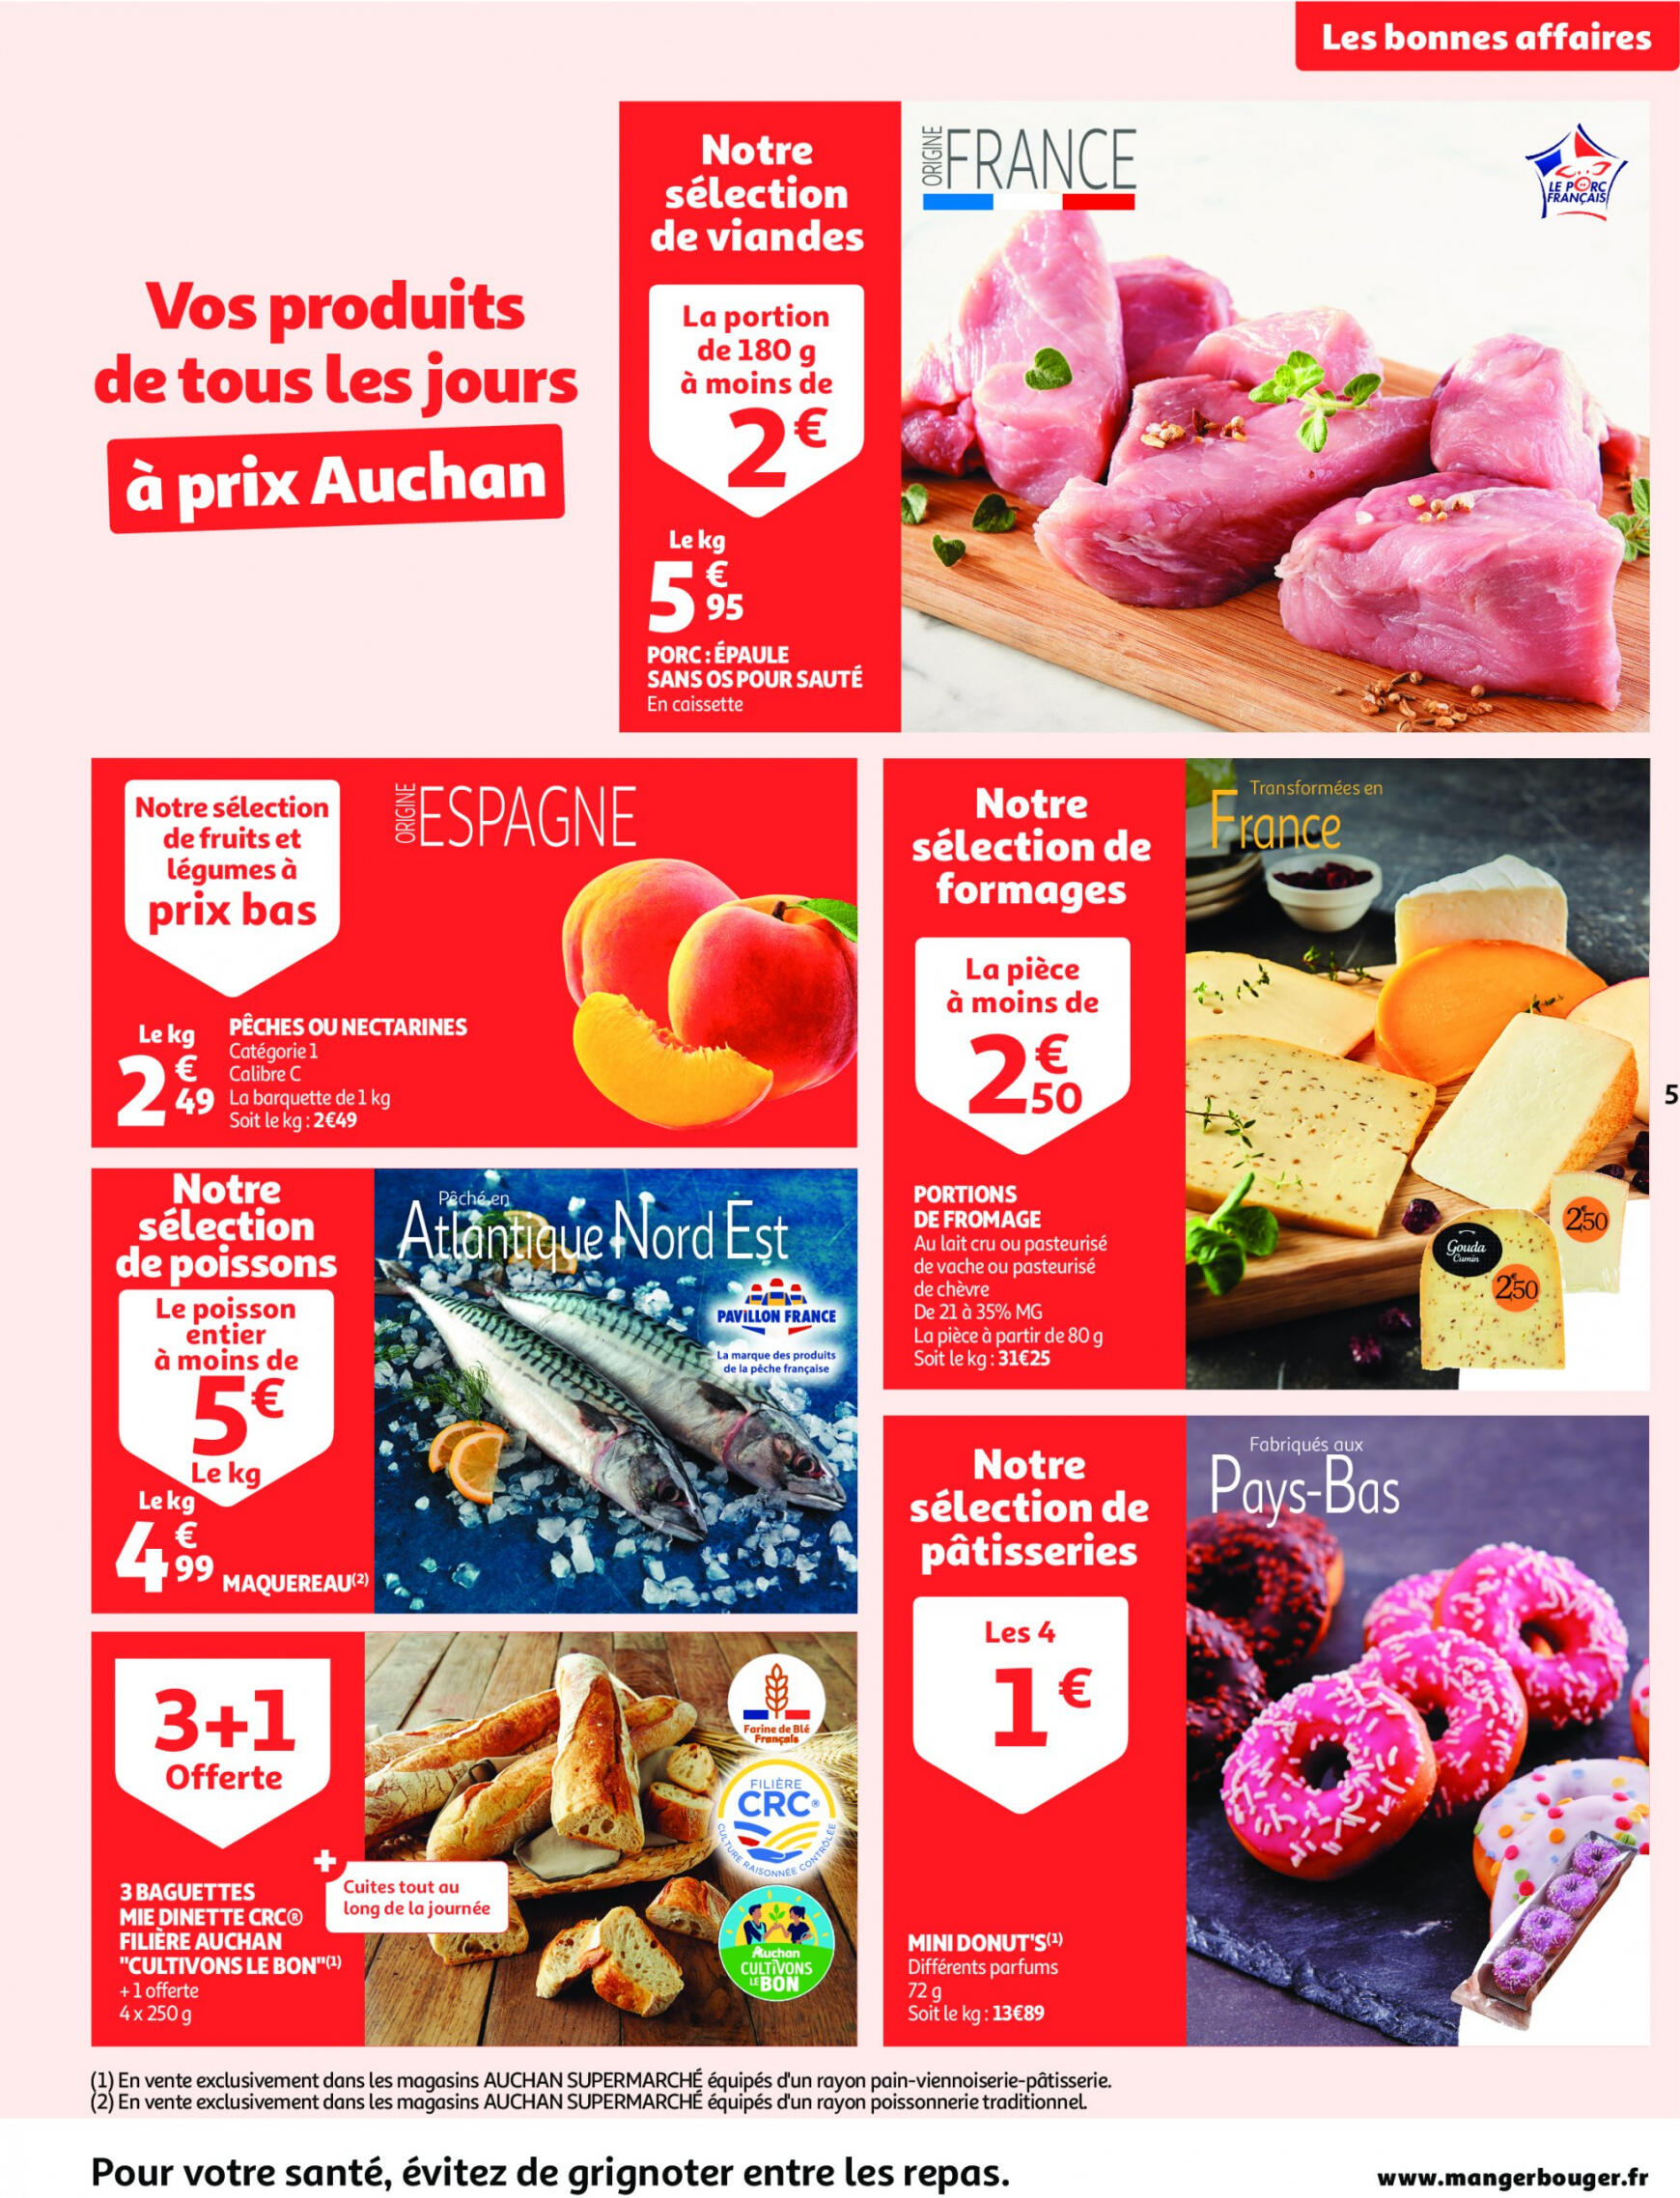 auchan - Auchan supermarché - Faites le plein de bonnes affaires folder huidig 22.05. - 26.05. - page: 5